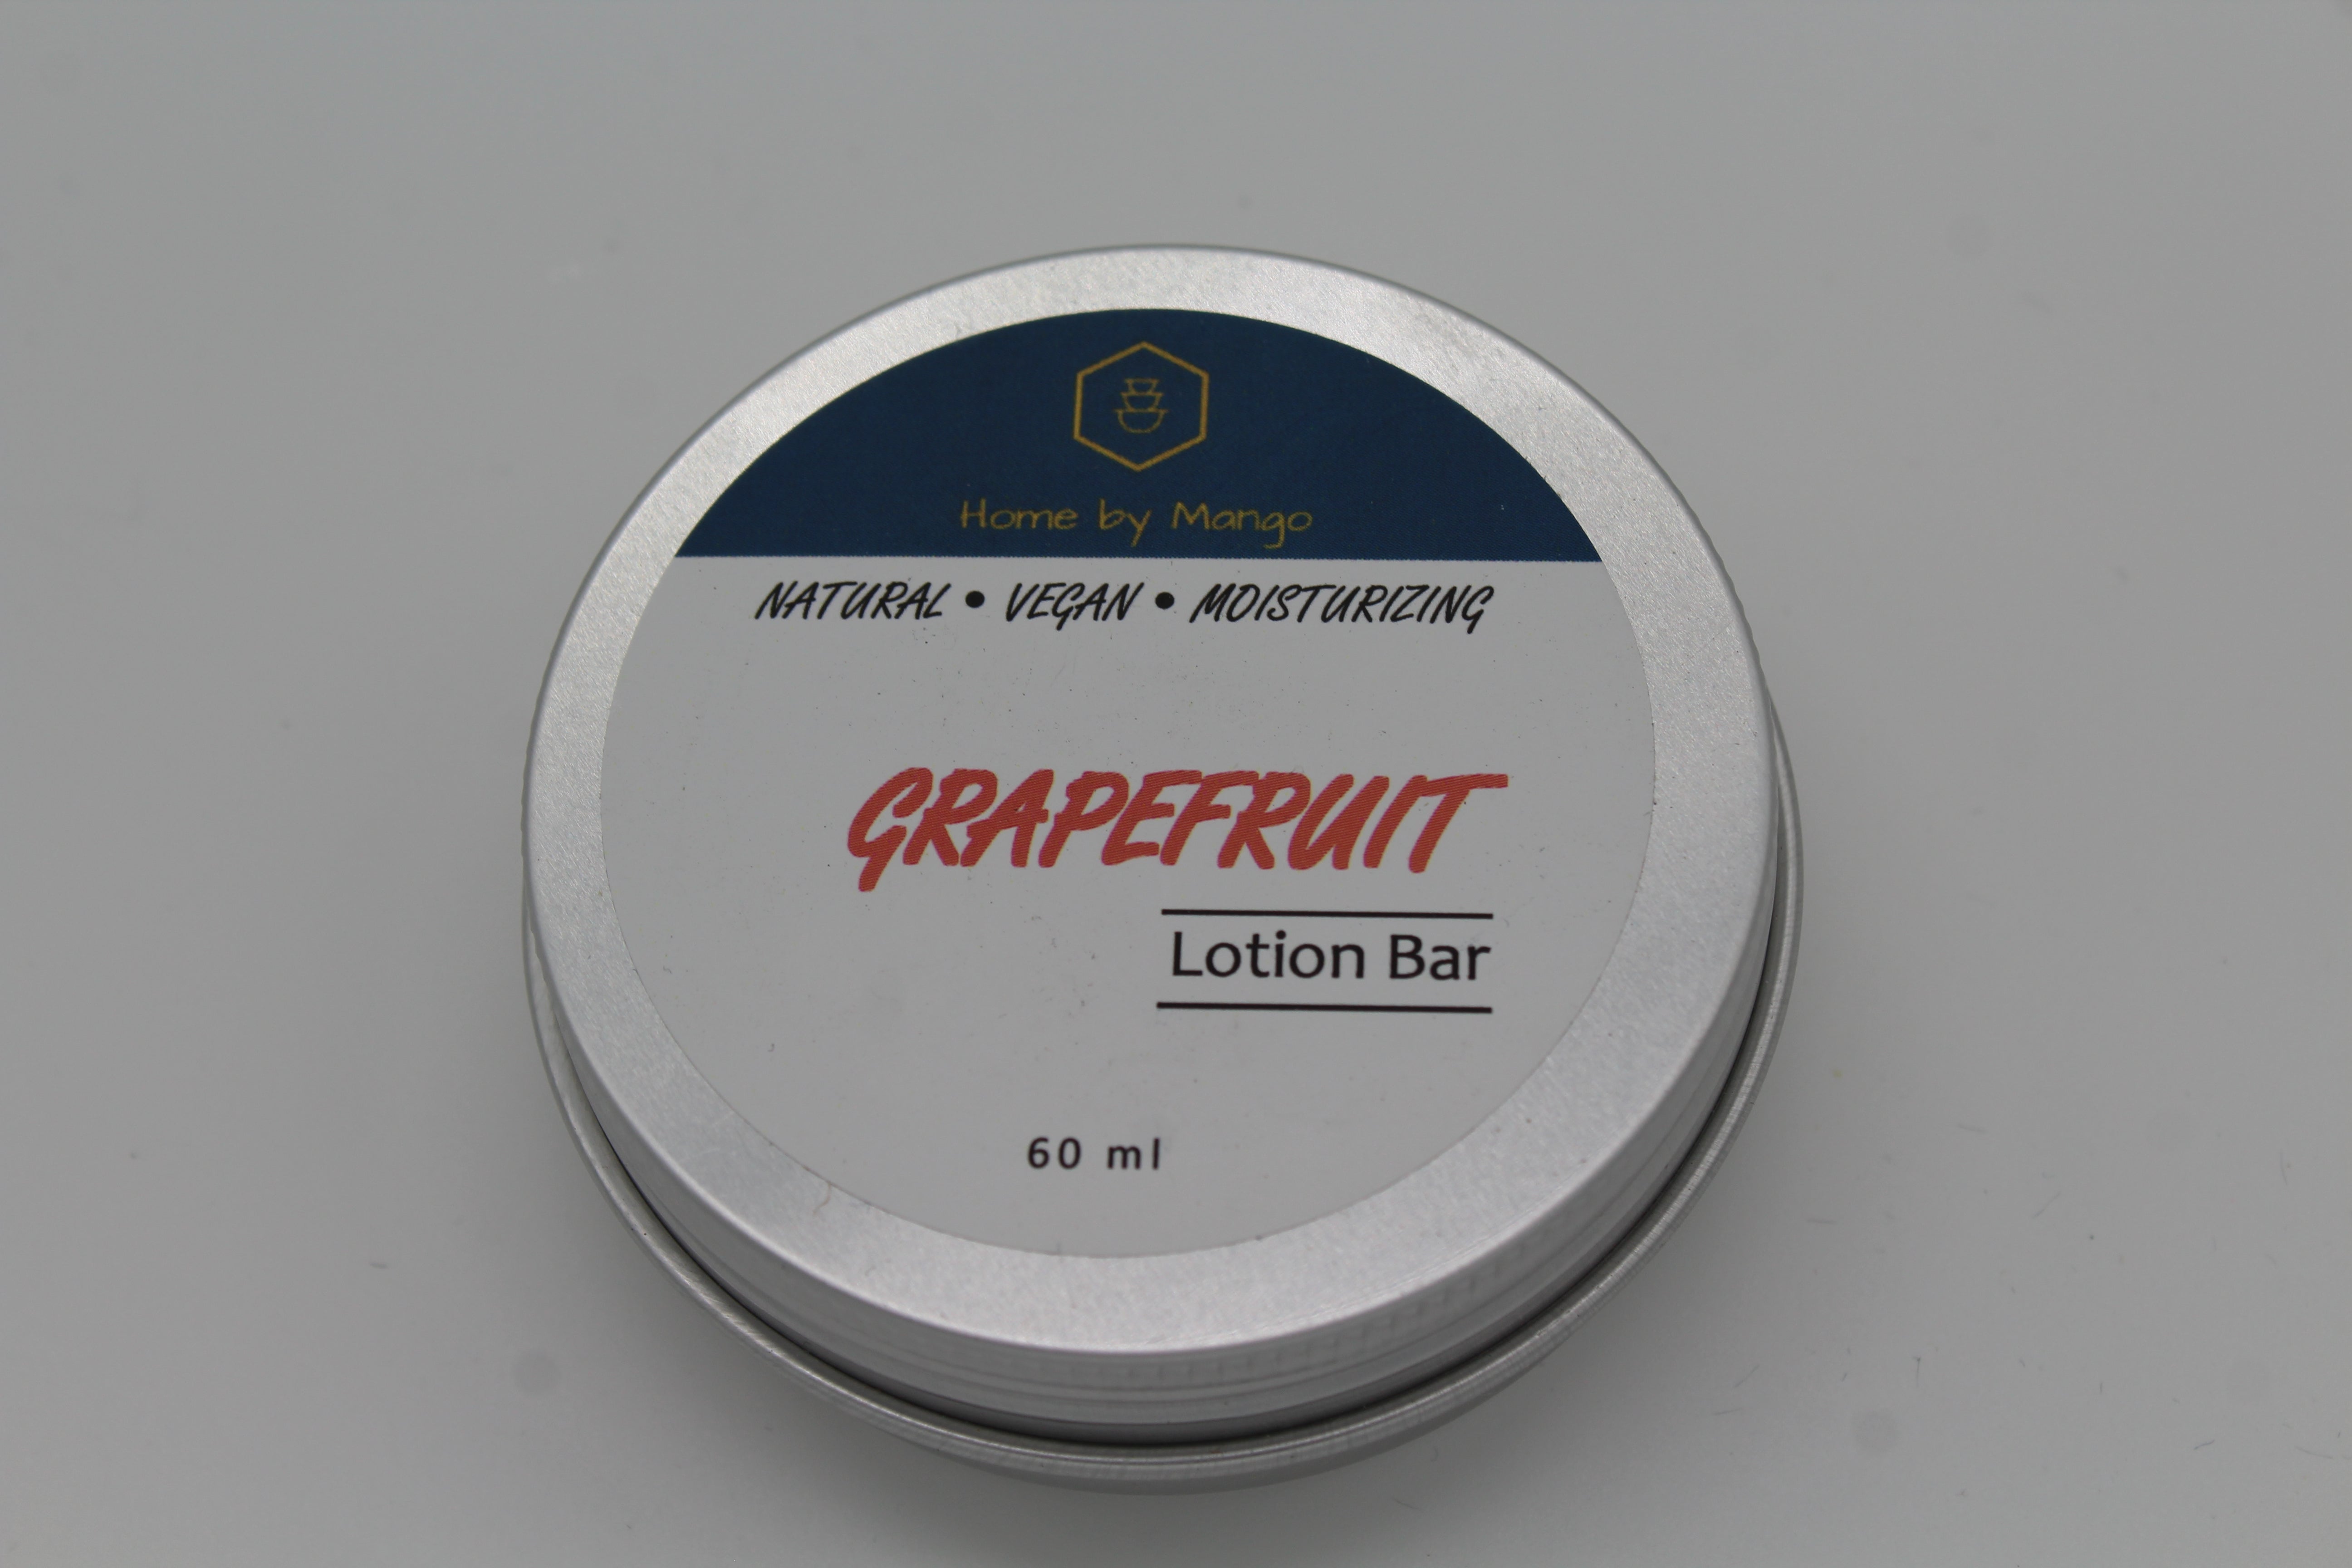 Grapefruit Lotion Bar